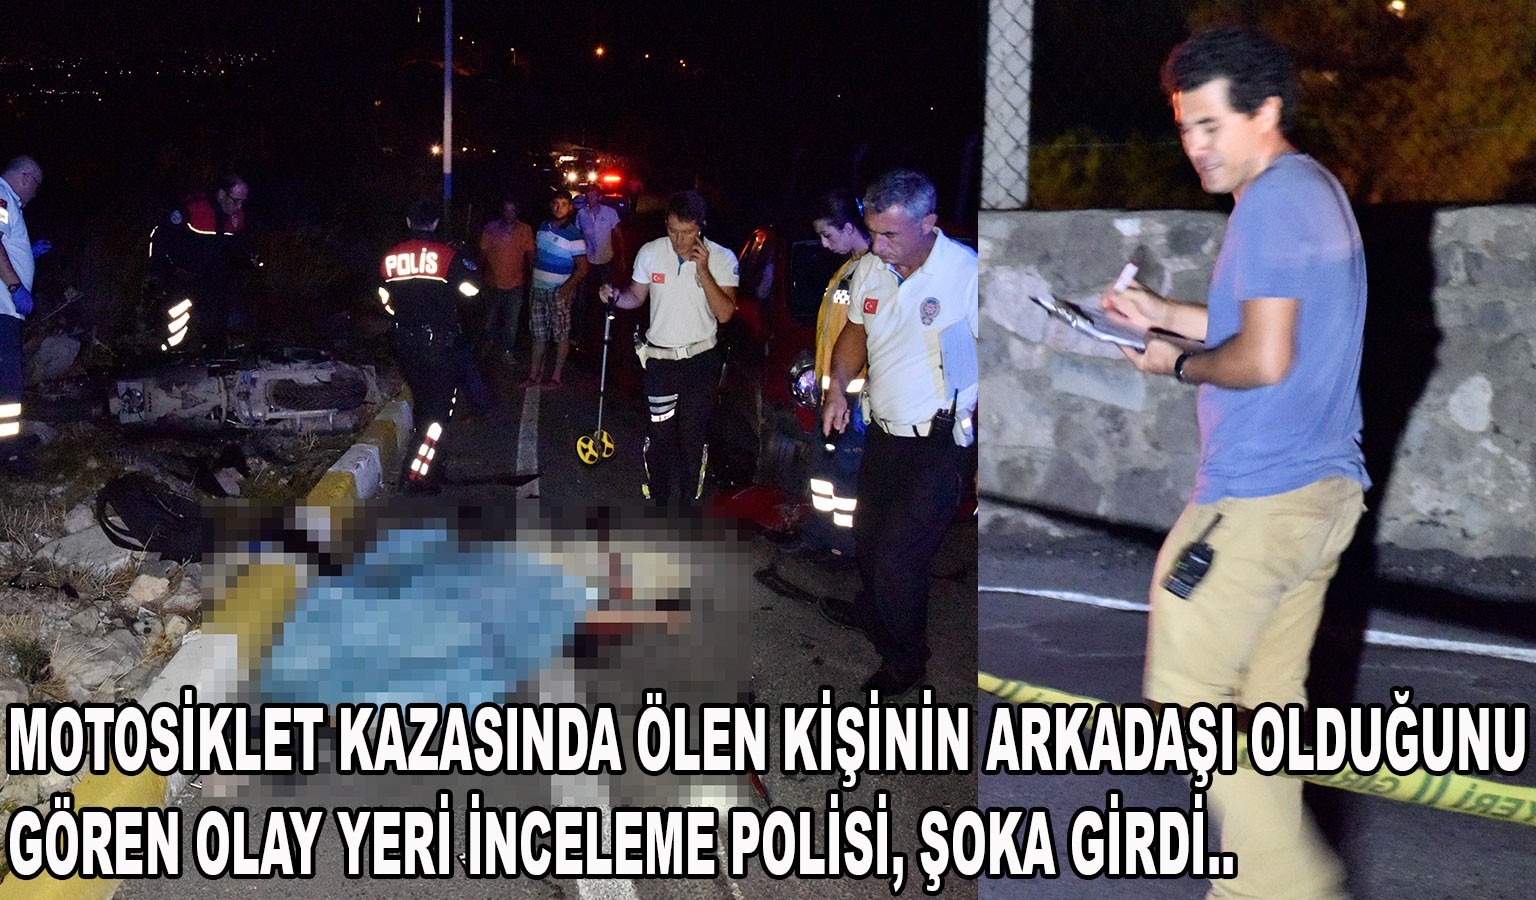 POLİS MEMURU, OLAY YERİNE GELDİĞİNDE ŞOK YAŞADI!